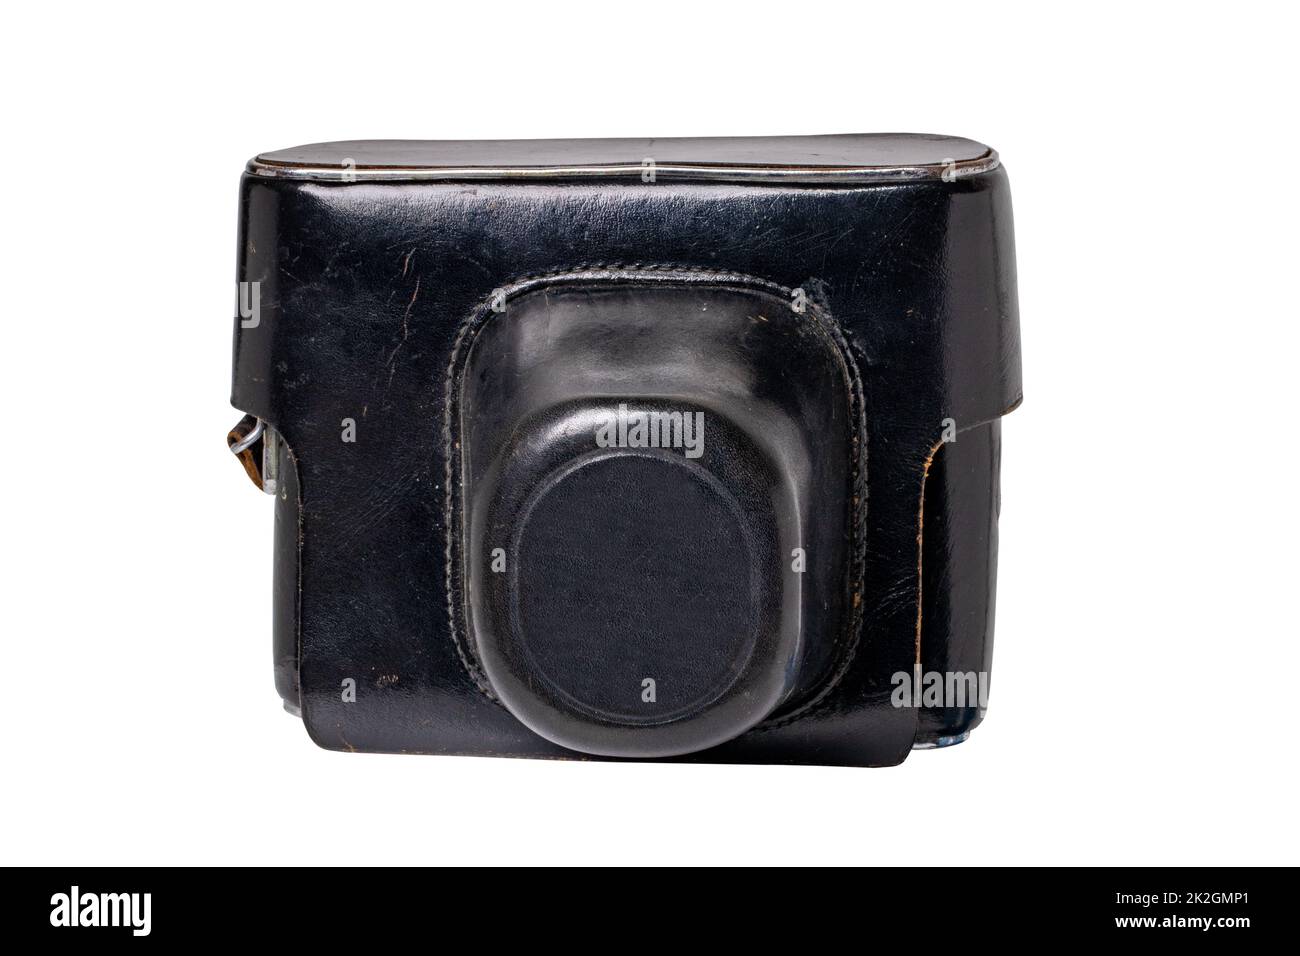 Gros plan d'un appareil photo de film vintage dans un étui en cuir noir ou une housse isolée sur un fond blanc. Masque. Sac en cuir pour protéger l'appareil photo ancien. Macro. Banque D'Images